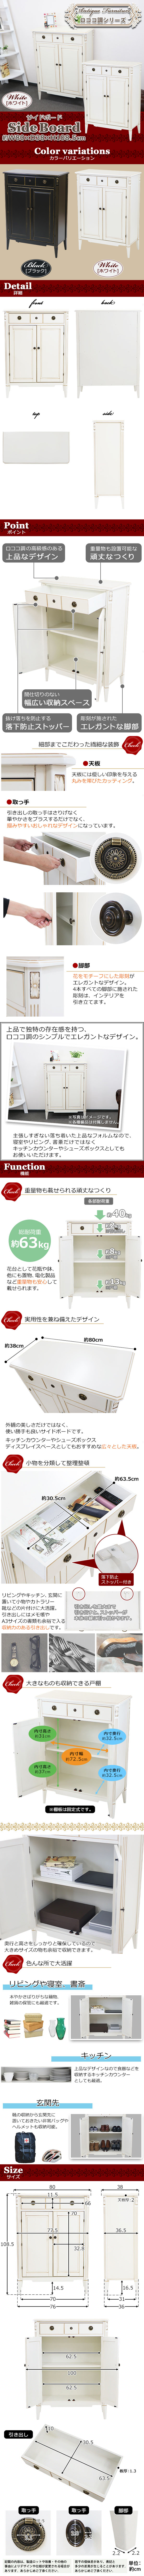 日本製好評送料無料 ロココ調 サイドボード ホワイト 約W80×約D38×約H108.5(cm) 収納 木製 ロココ アンティーク クラシック レトロ ヨーロピアン サイドボード